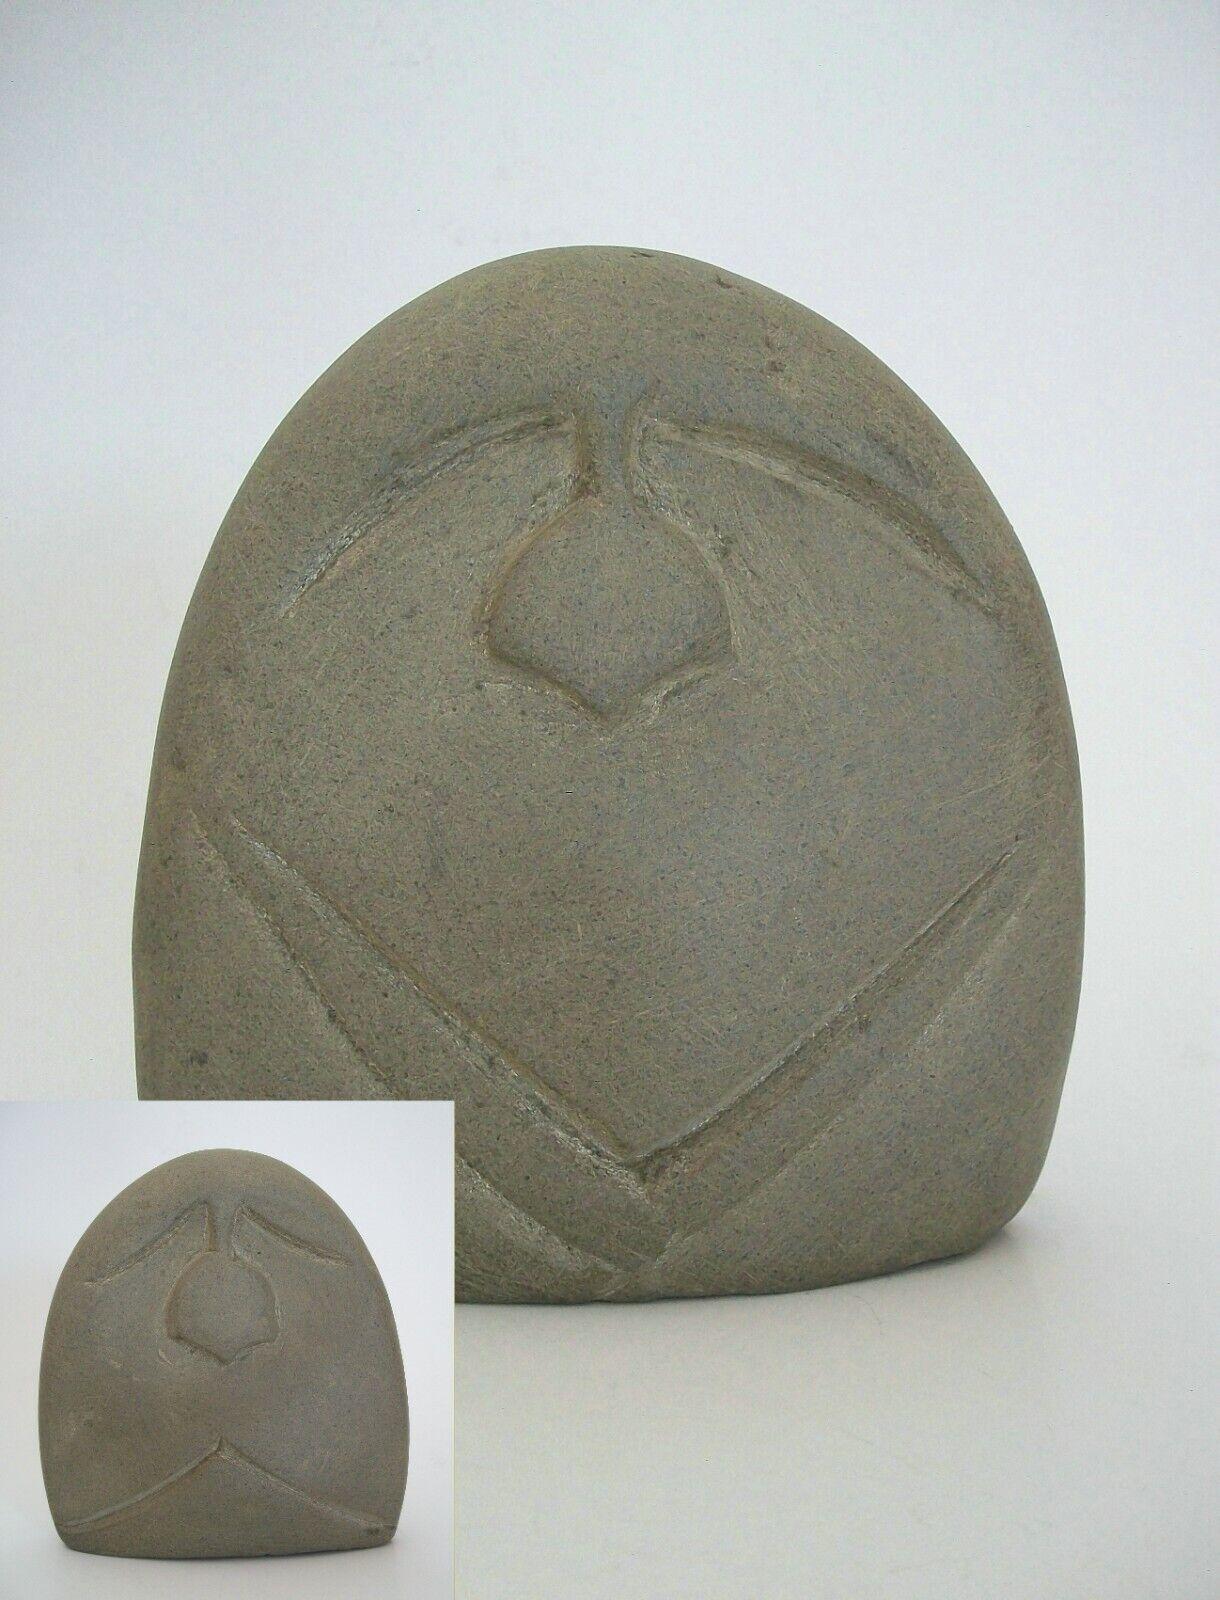 Vintage Inuit 'two faced' Steinschnitzerei - feine modernistische Schnitzerei mit sparsamer Dekoration - signiert PAUL (in Roman) auf der Basis - Kanada - Mitte des 20.

Ausgezeichneter Vintage-Zustand - kein Verlust - keine Beschädigung - keine